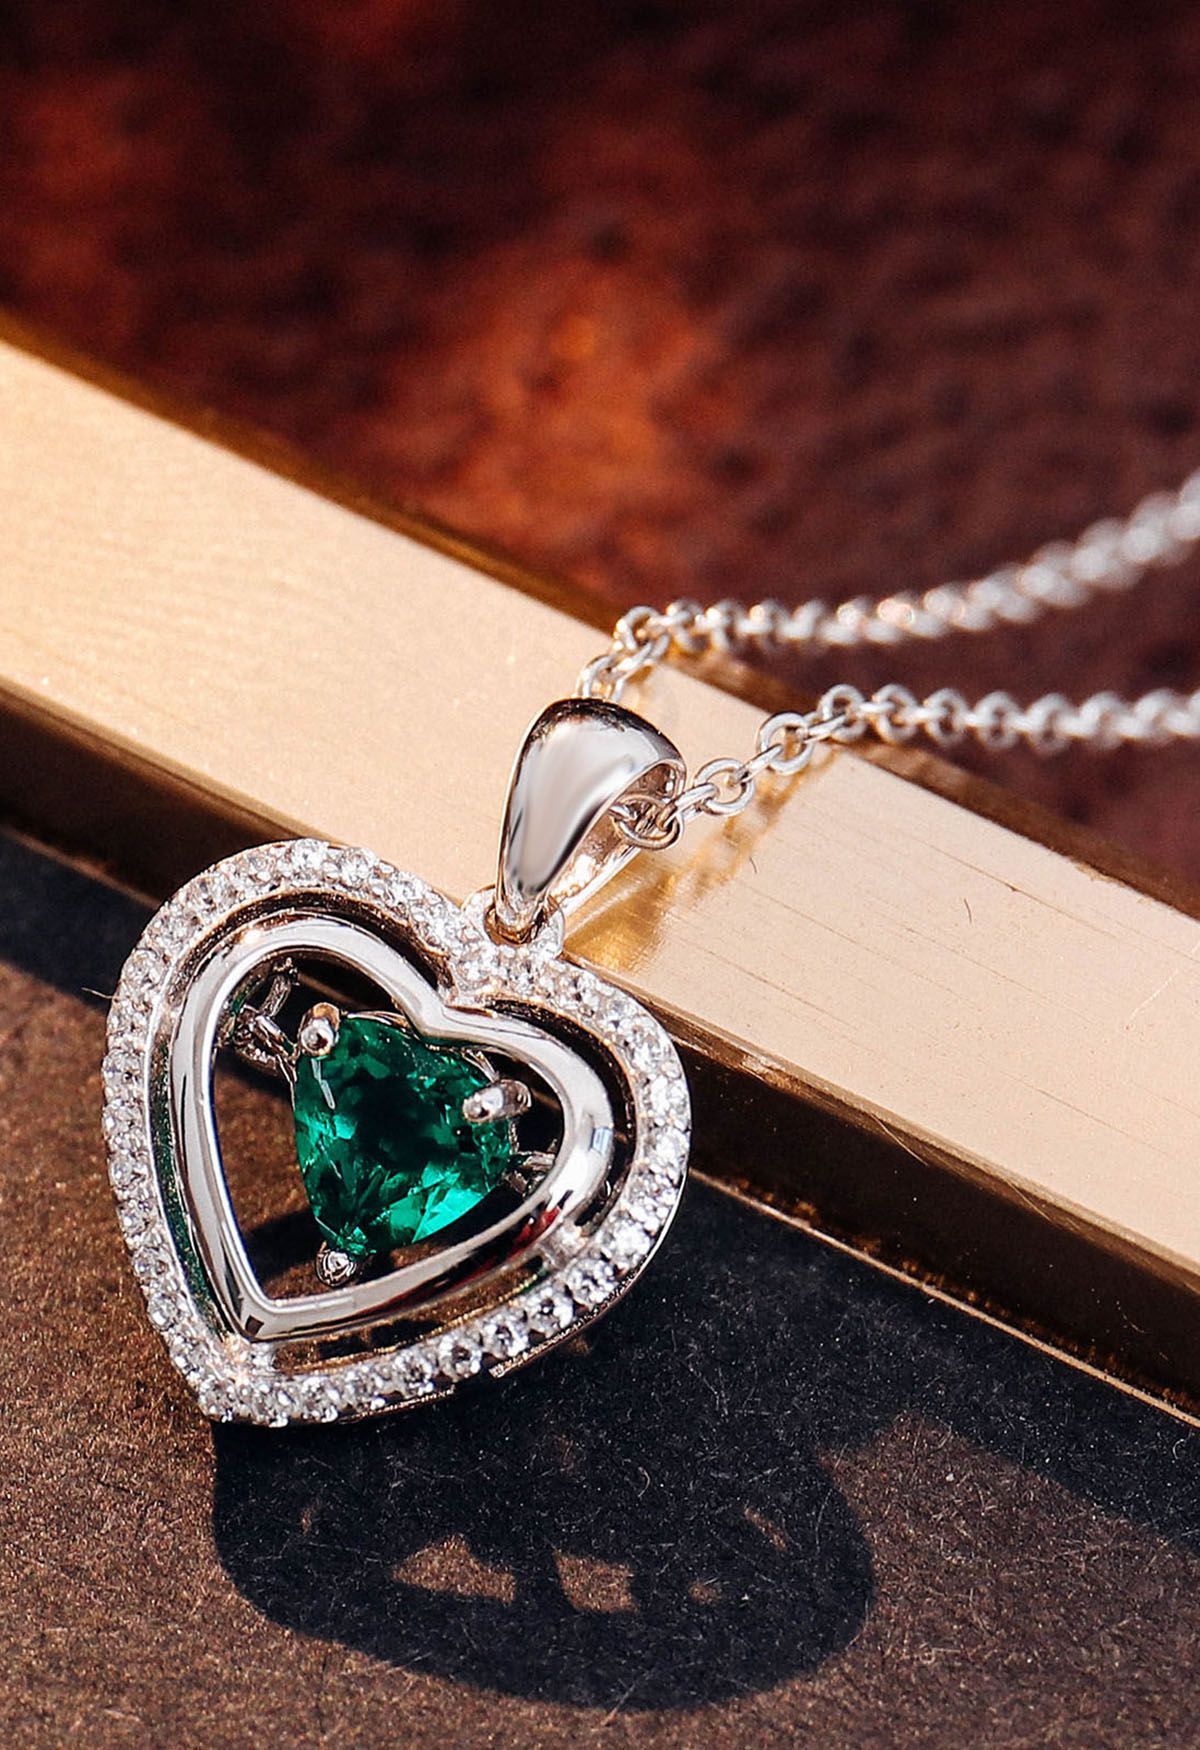 Collar de gemas de esmeralda con forma de corazón hueco